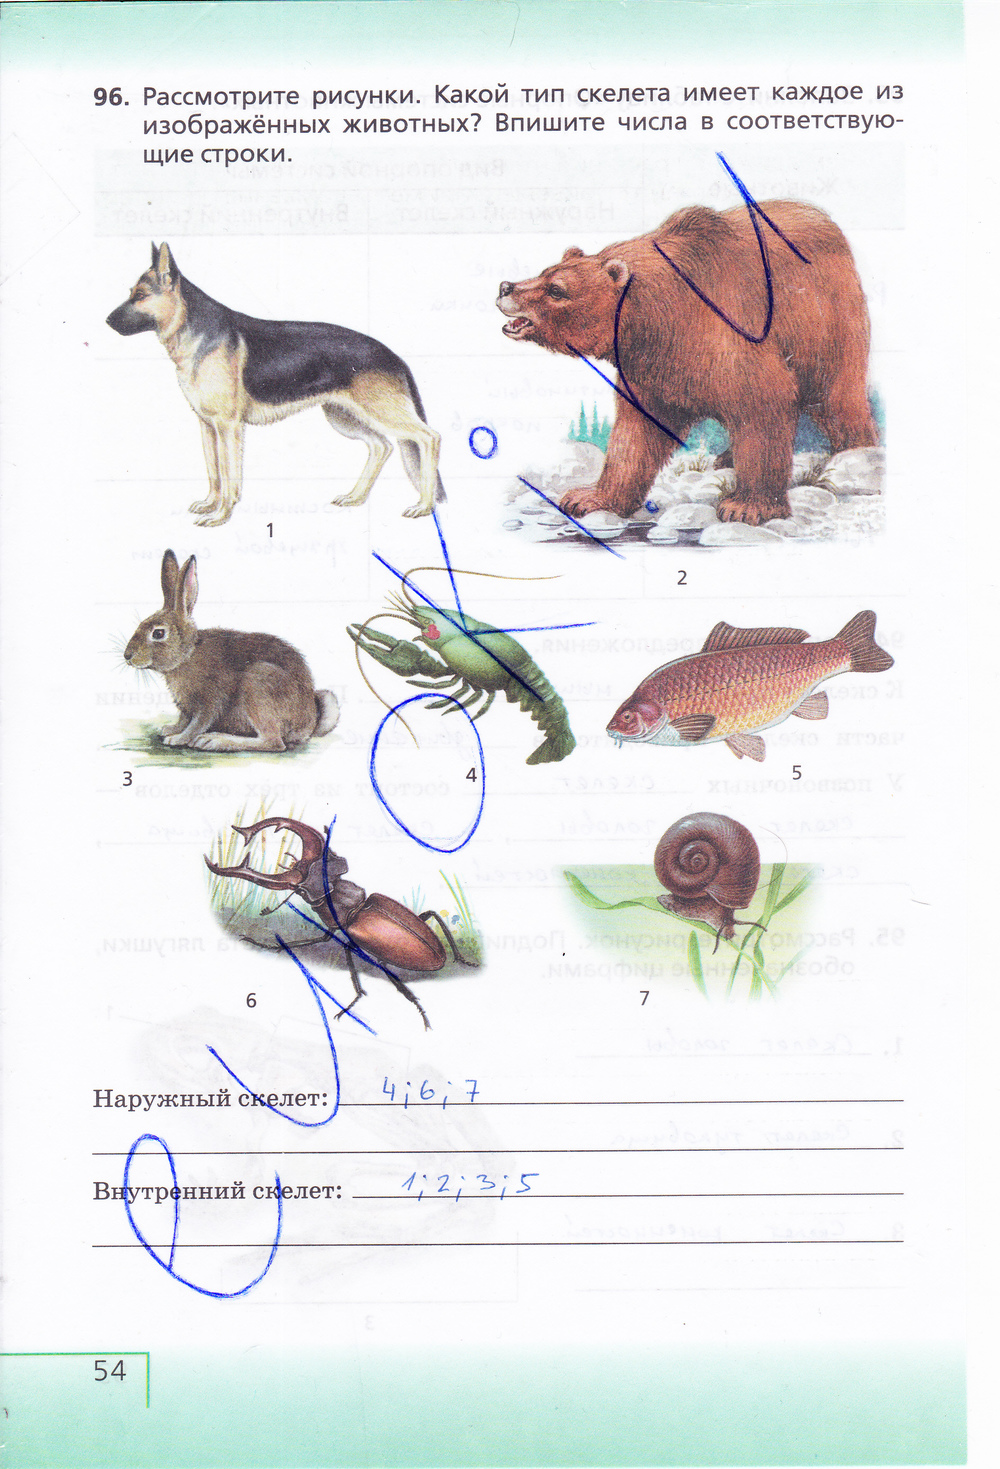 Определите с помощью атласа определителя животных изображенных на рисунках учебника